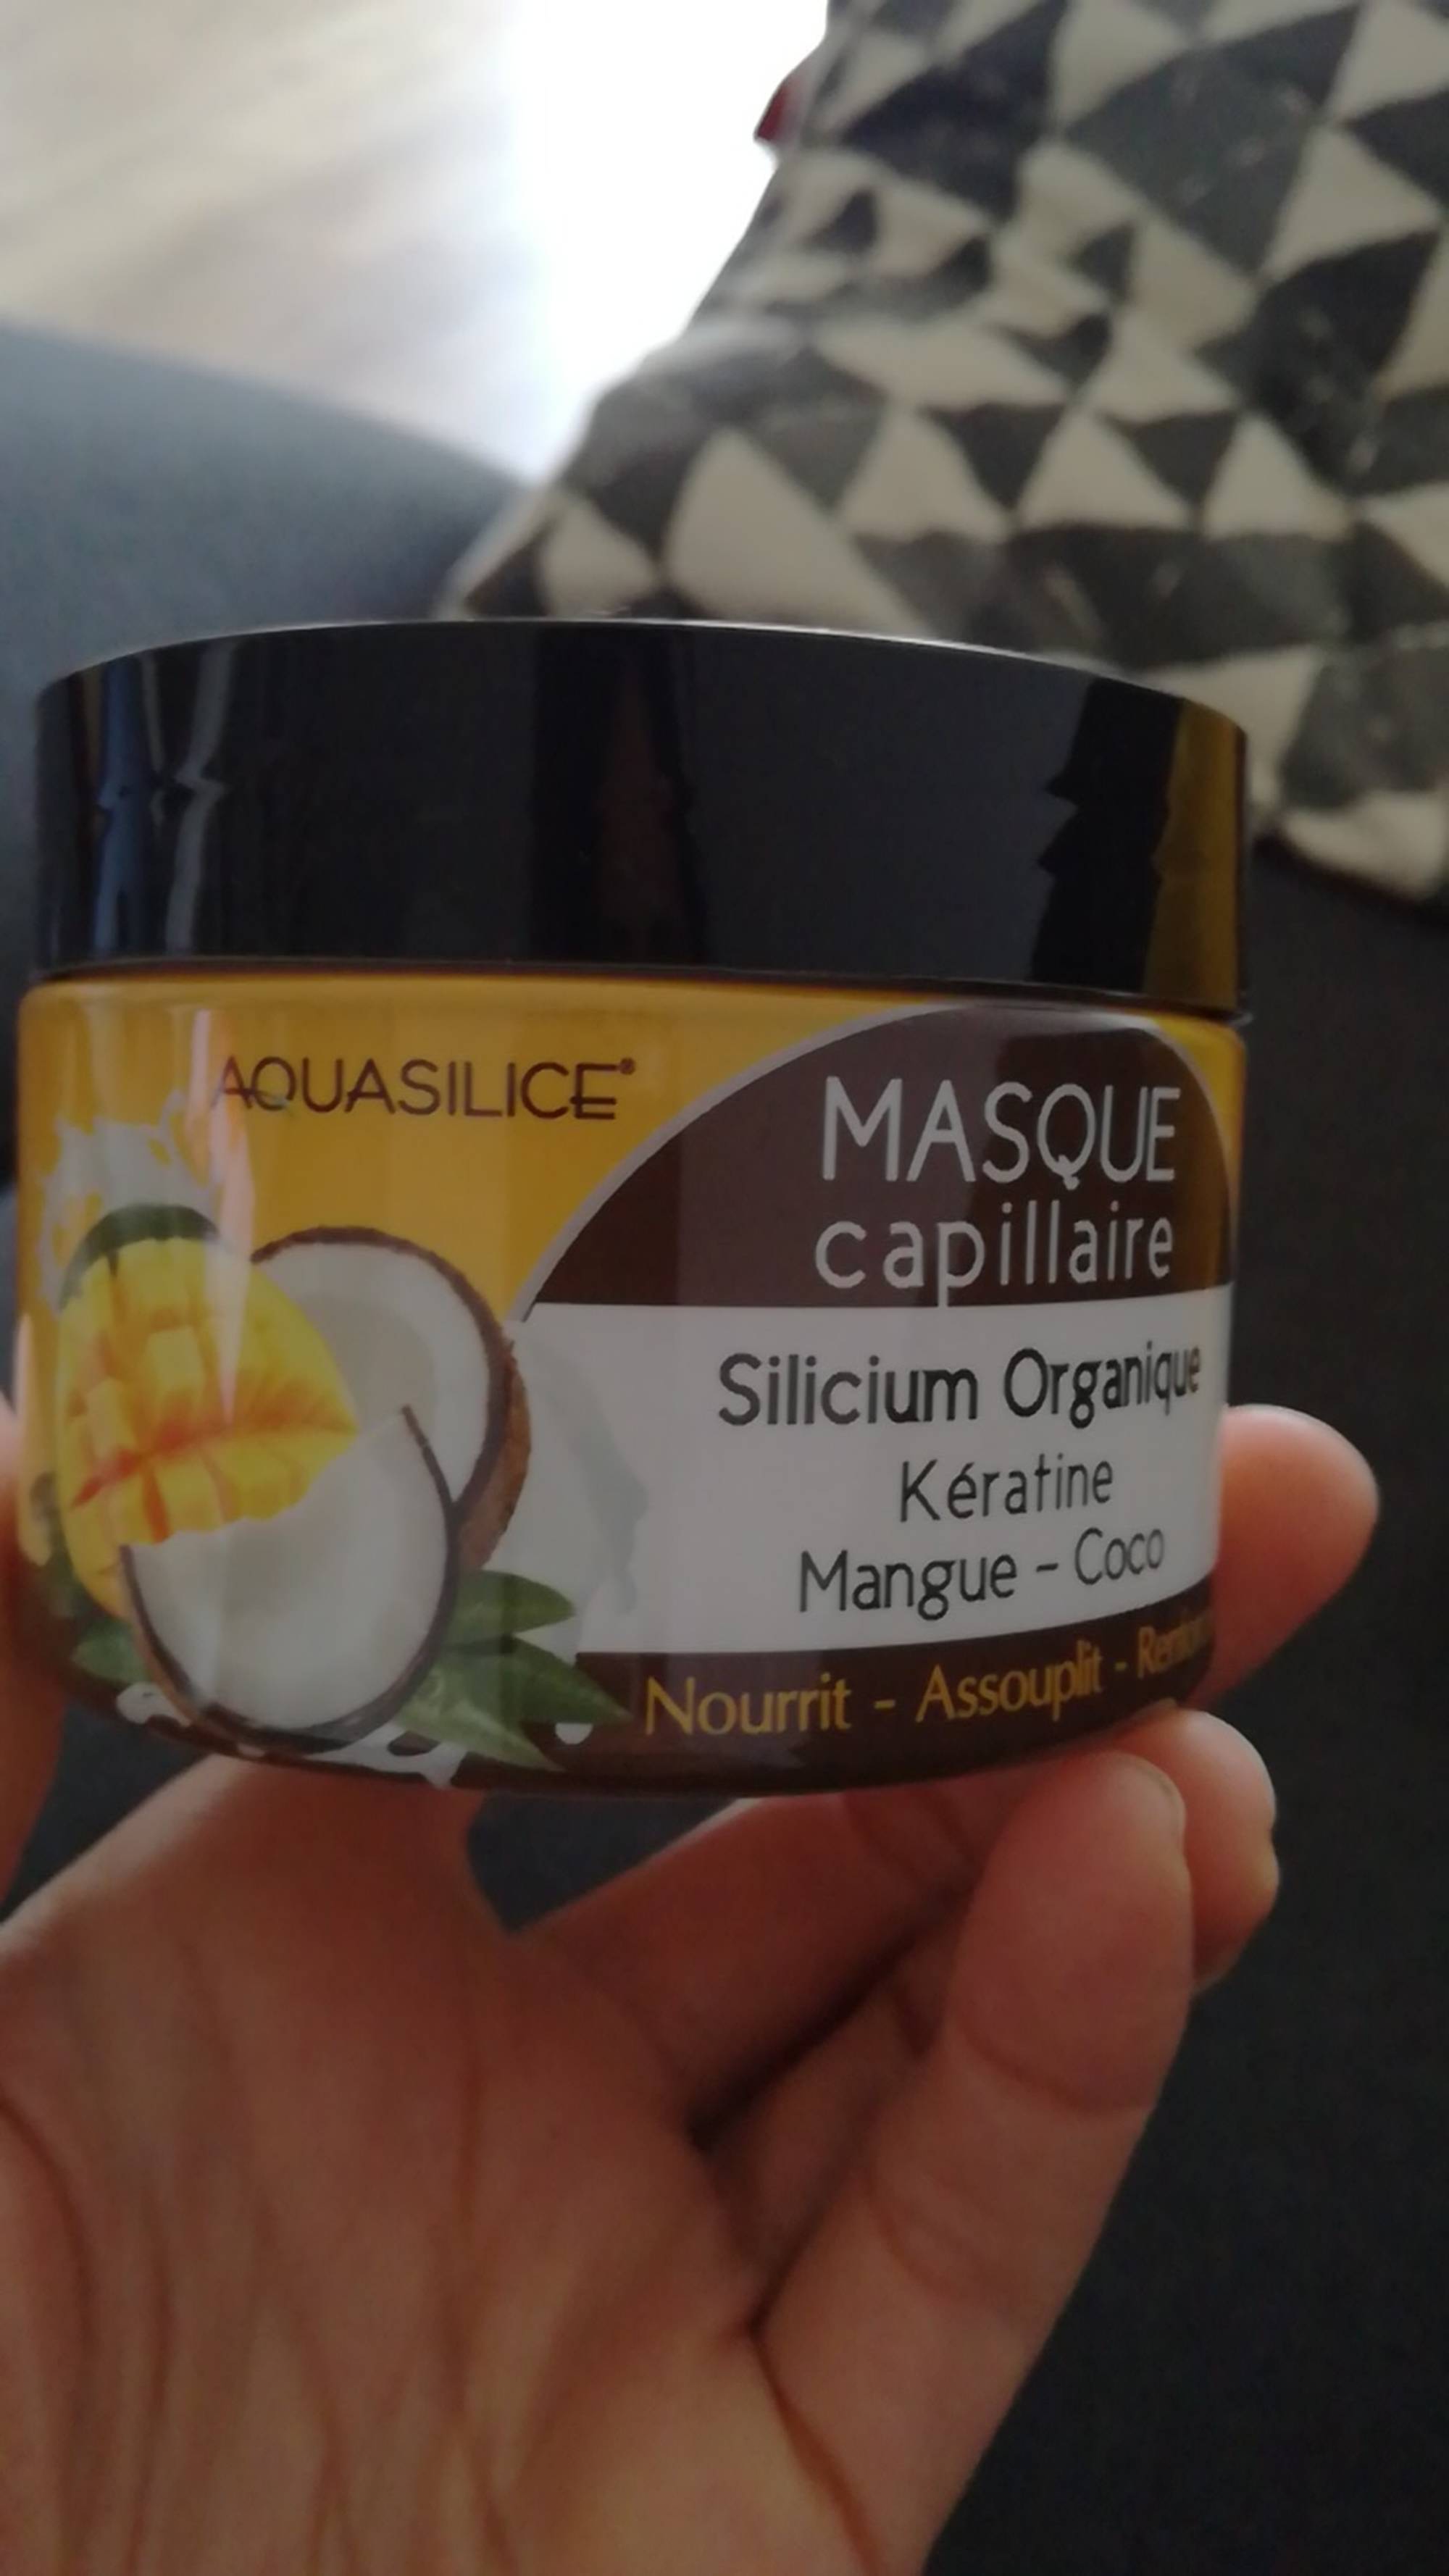 AQUASILICE - Masque capillaire silicium organique